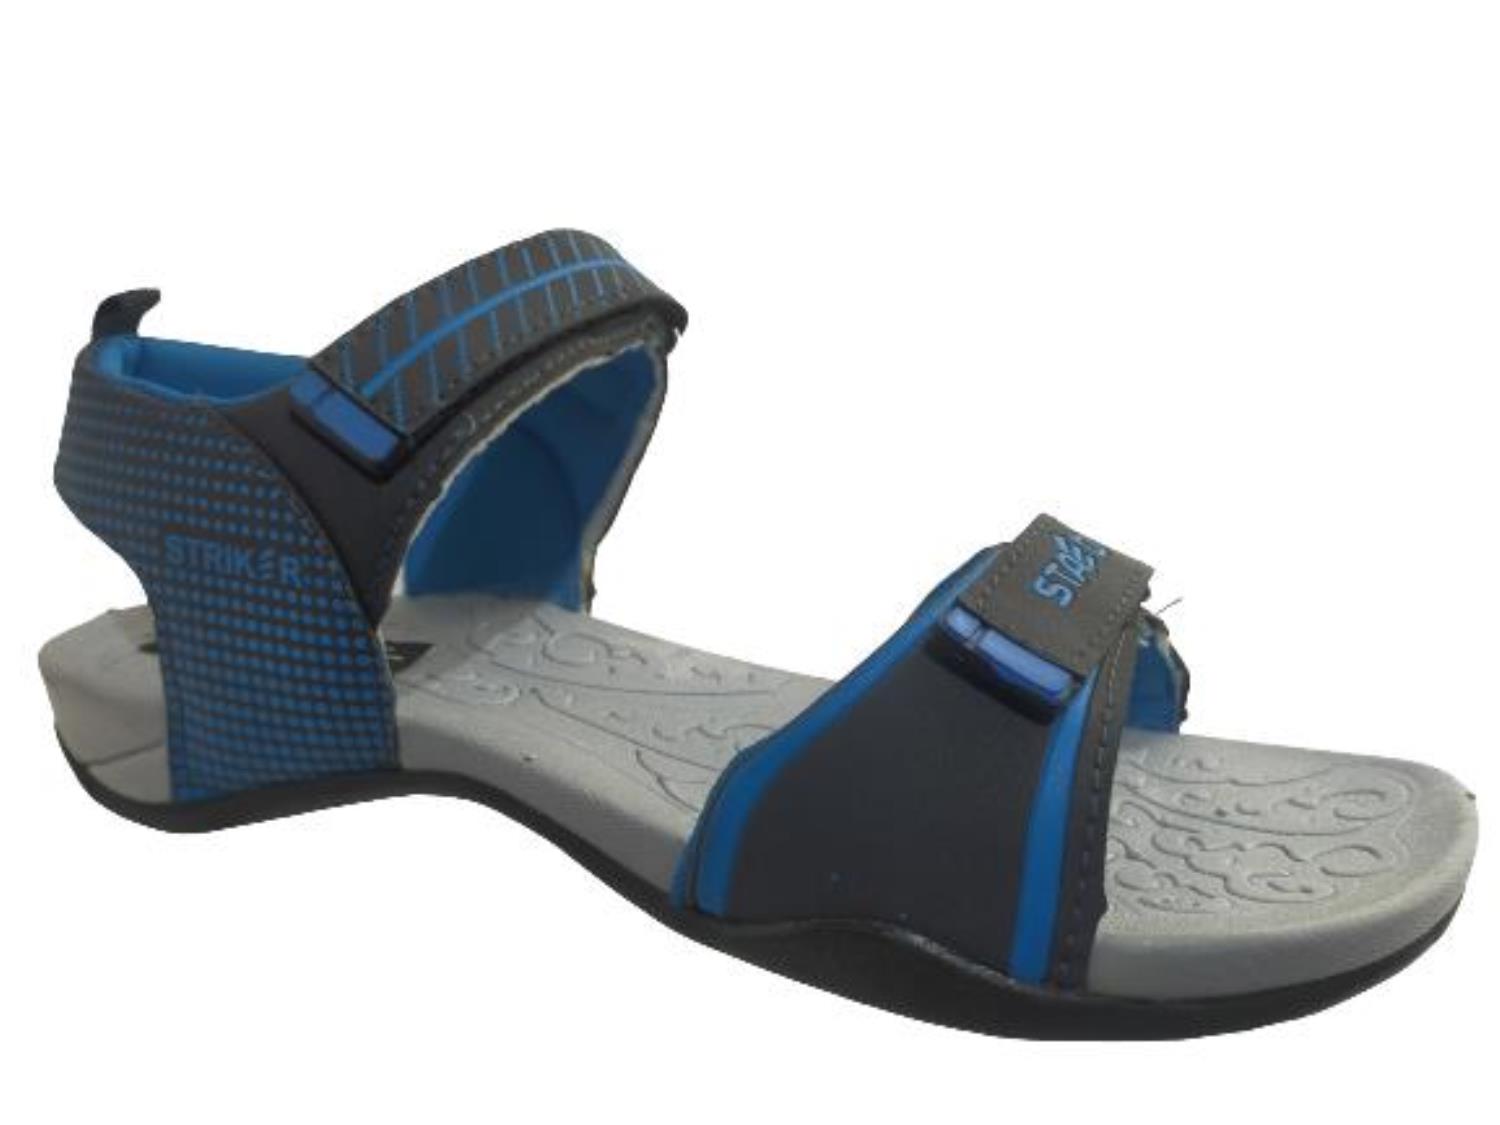 Monex Sted Slip On Sneakers For Men - Buy Monex Sted Slip On Sneakers For  Men Online at Best Price - Shop Online for Footwears in India | Flipkart.com